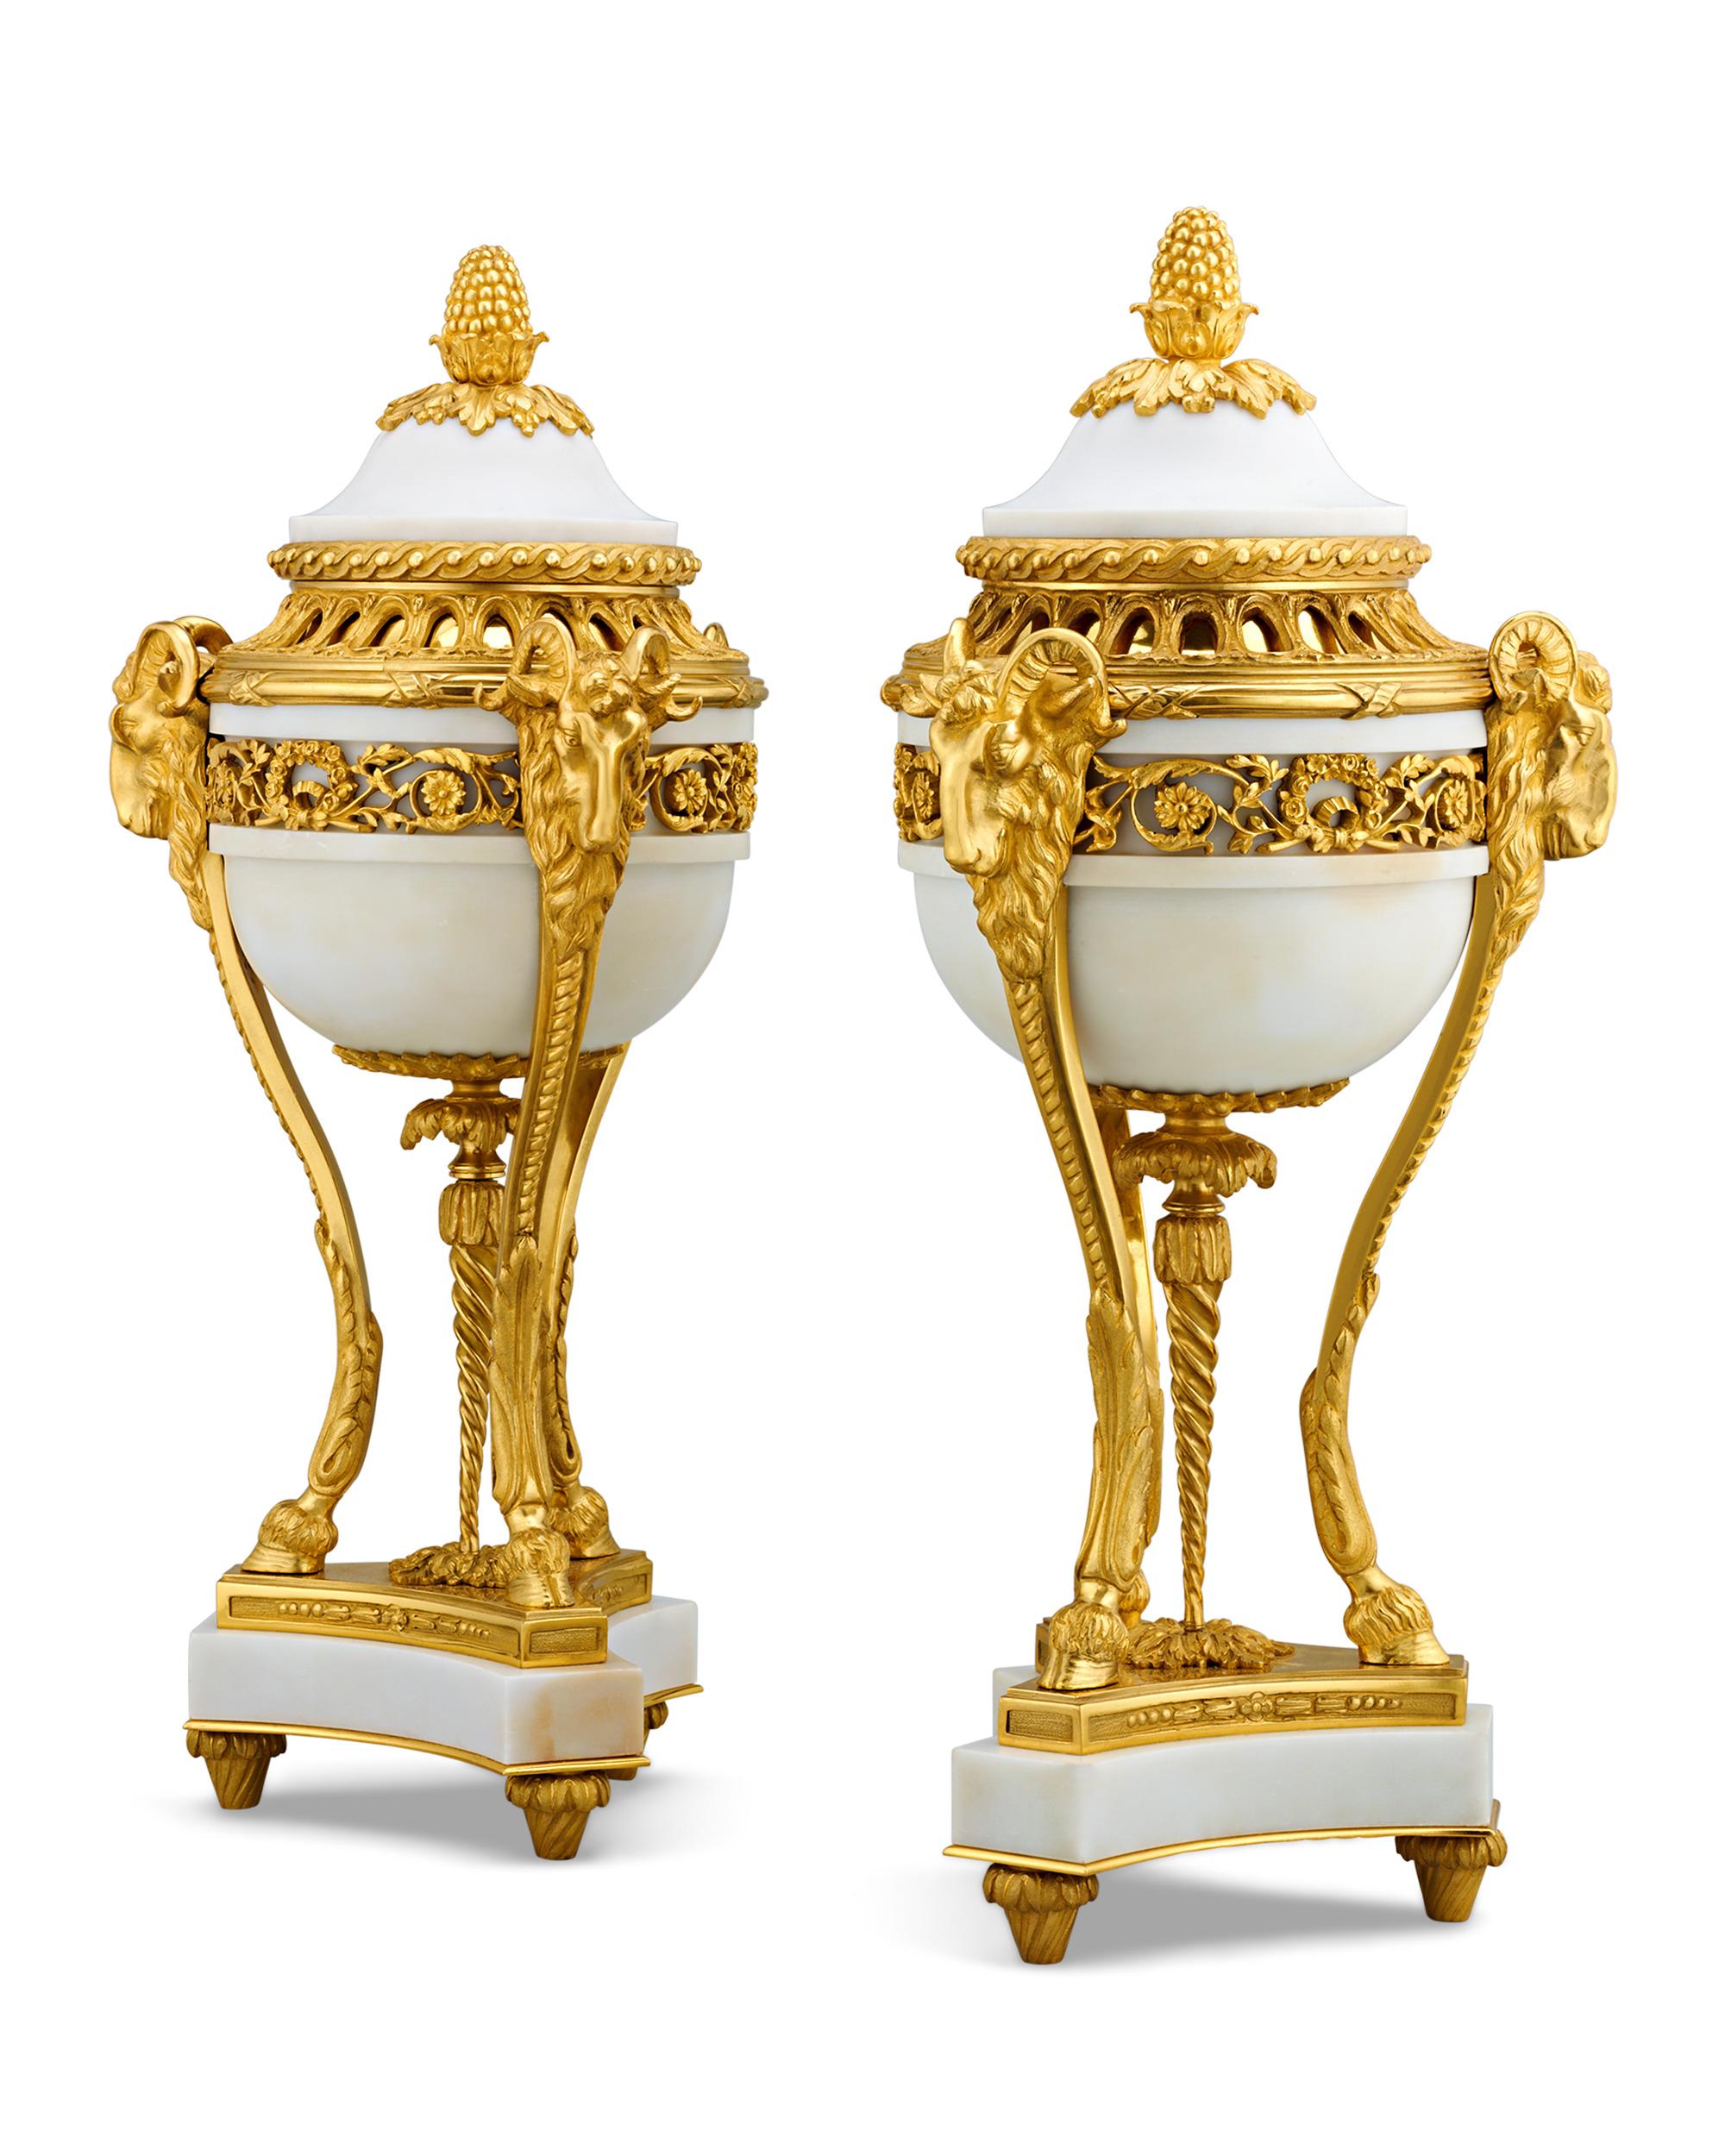 Les corps de cette paire de vases de style Louis XVI, mesurant près de deux pieds de haut, sont formés de magnifiques spécimens de marbre blanc. Les montures en bronze doré de style Louis XVI contrastent parfaitement avec les teintes vives de la